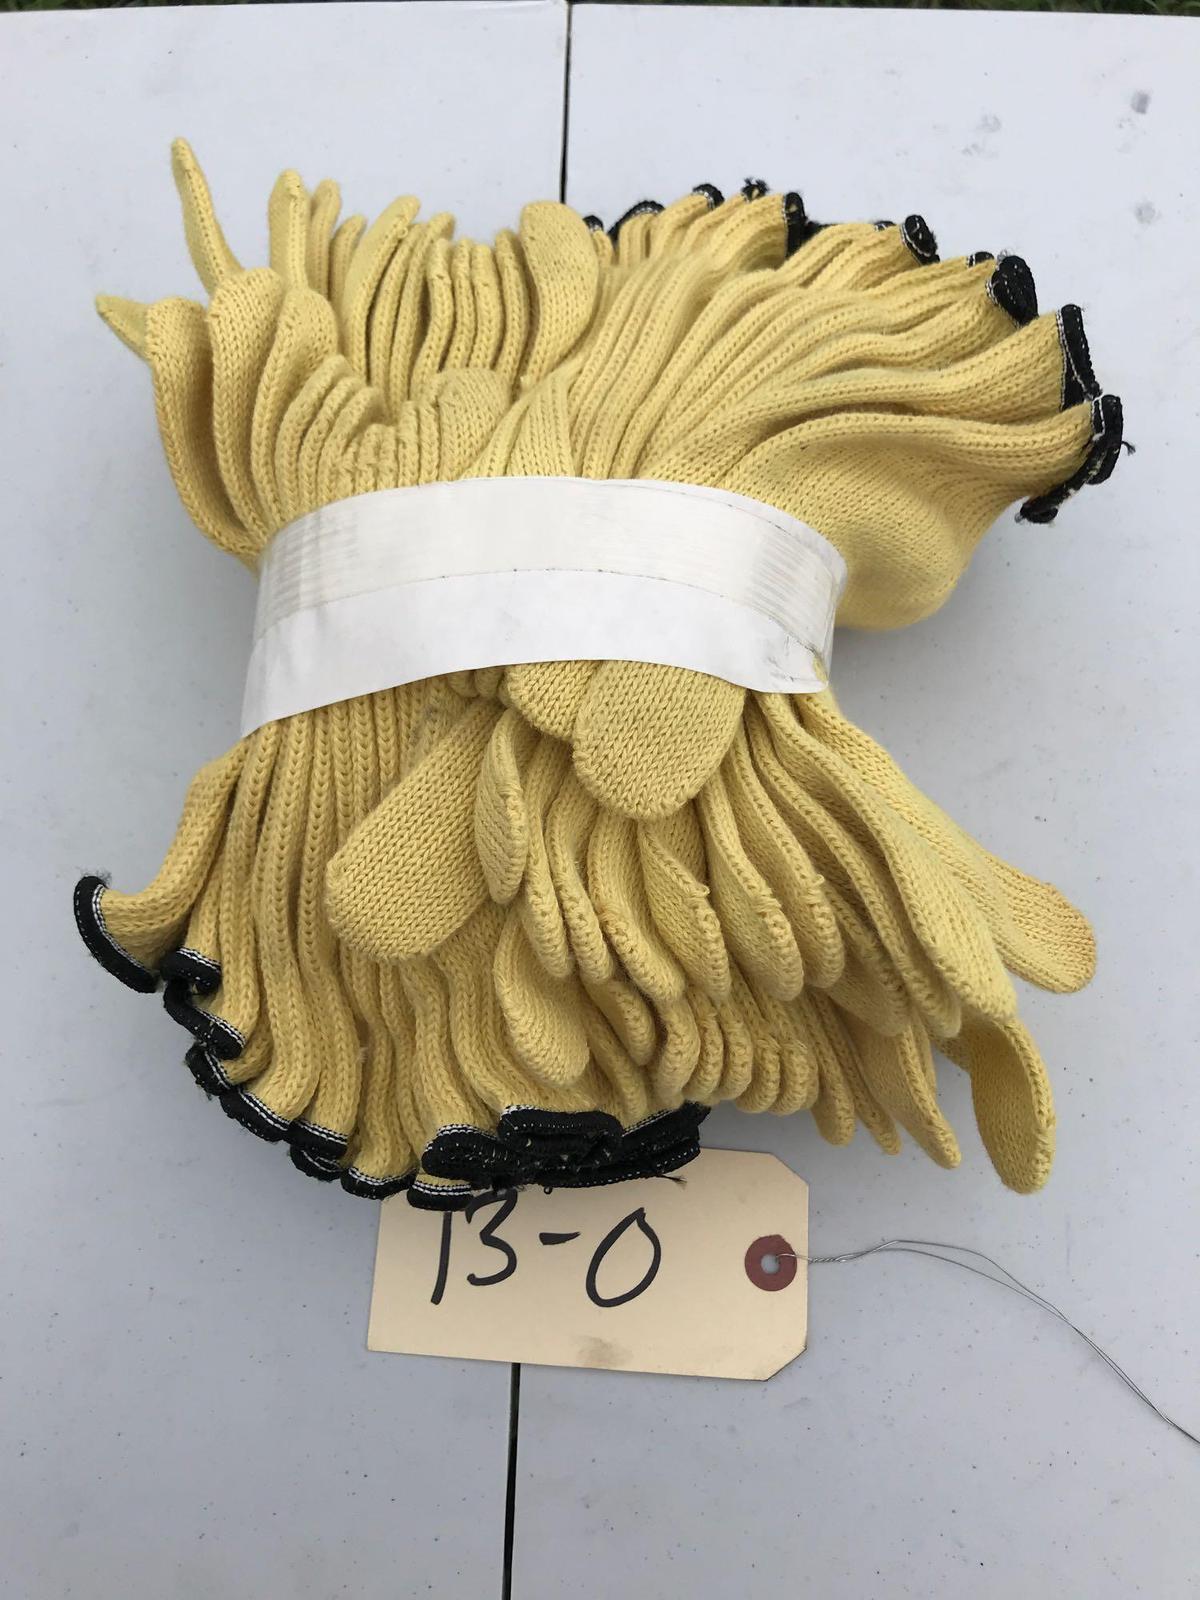 1 Dozen Work Gloves